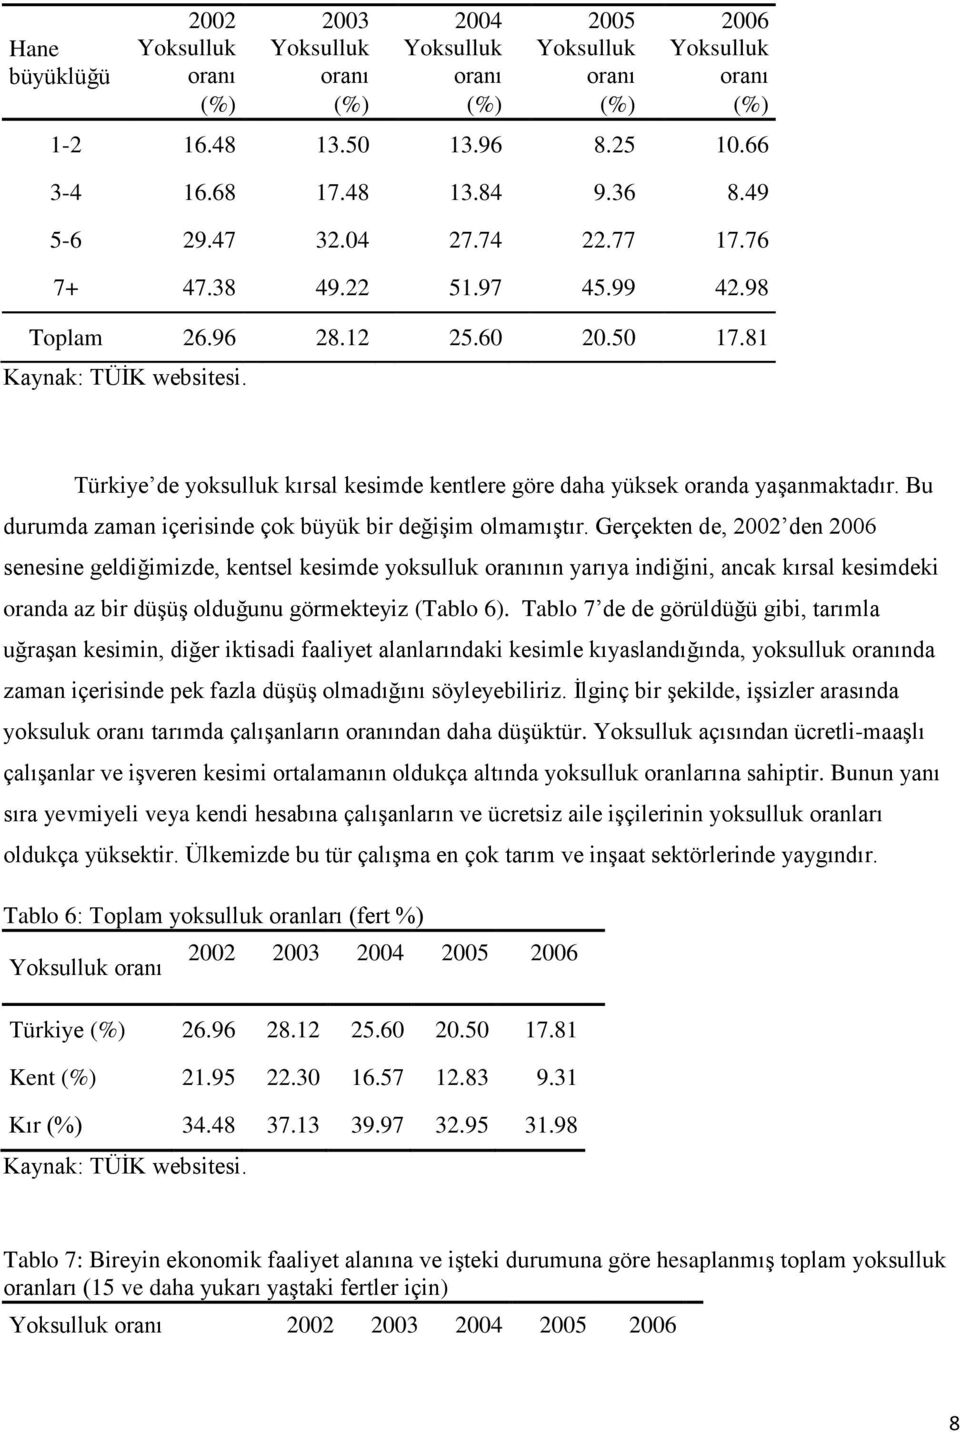 Türkiye de yoksulluk kırsal kesimde kentlere göre daha yüksek oranda yaşanmaktadır. Bu durumda zaman içerisinde çok büyük bir değişim olmamıştır.